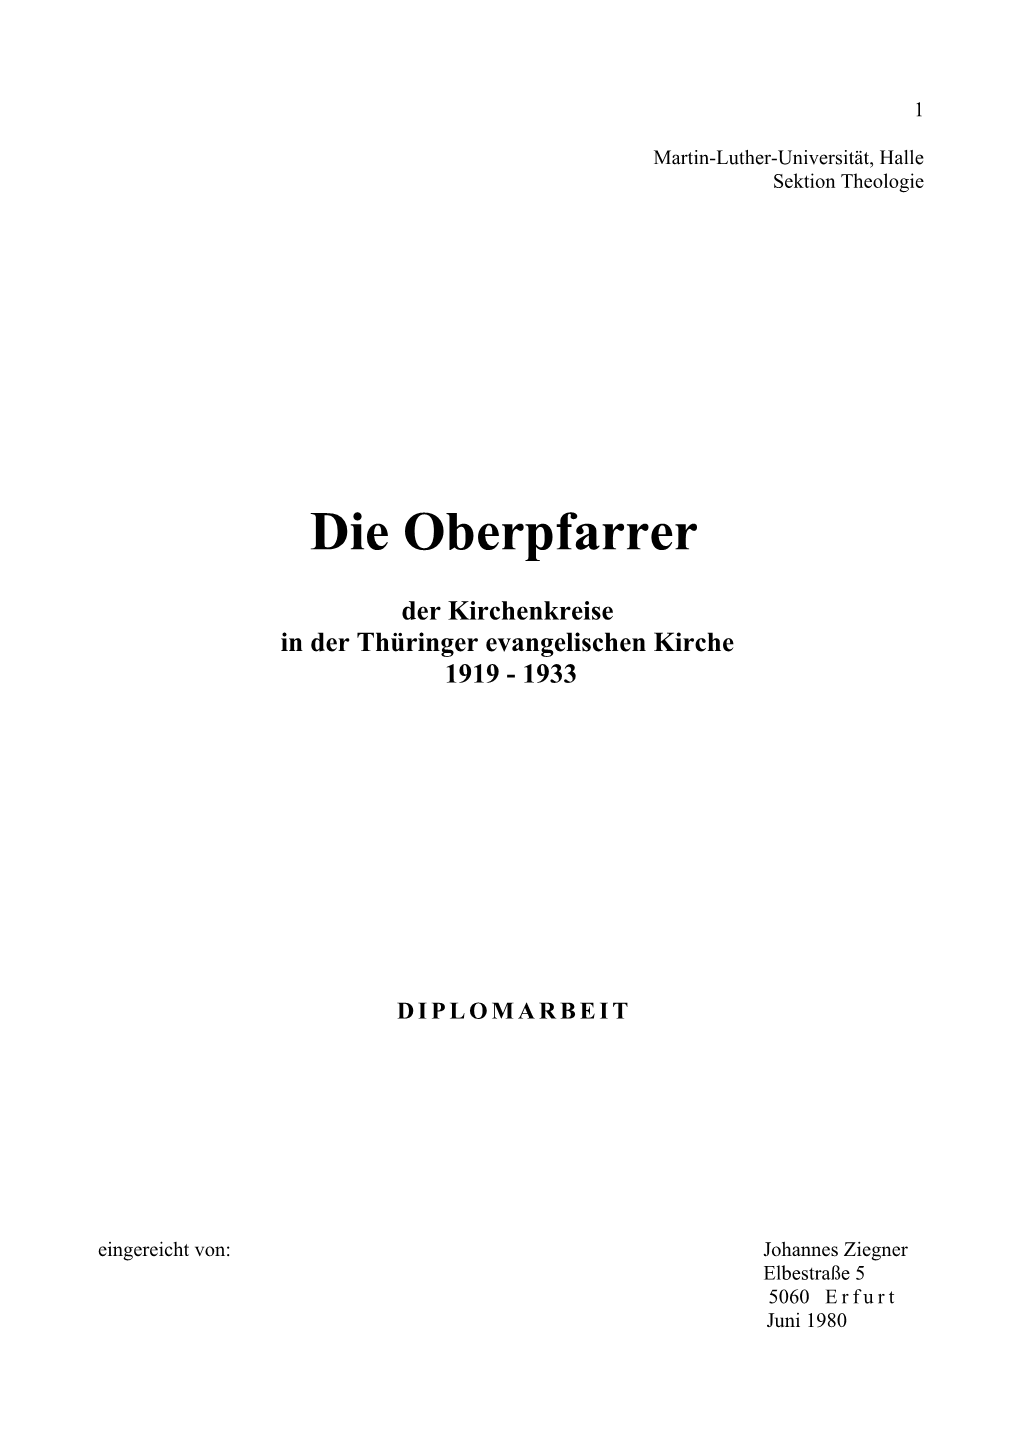 Die Oberpfarrer Der Kirchenkreise in Der Thüringer Evangelischen Kirche 1919 - 933